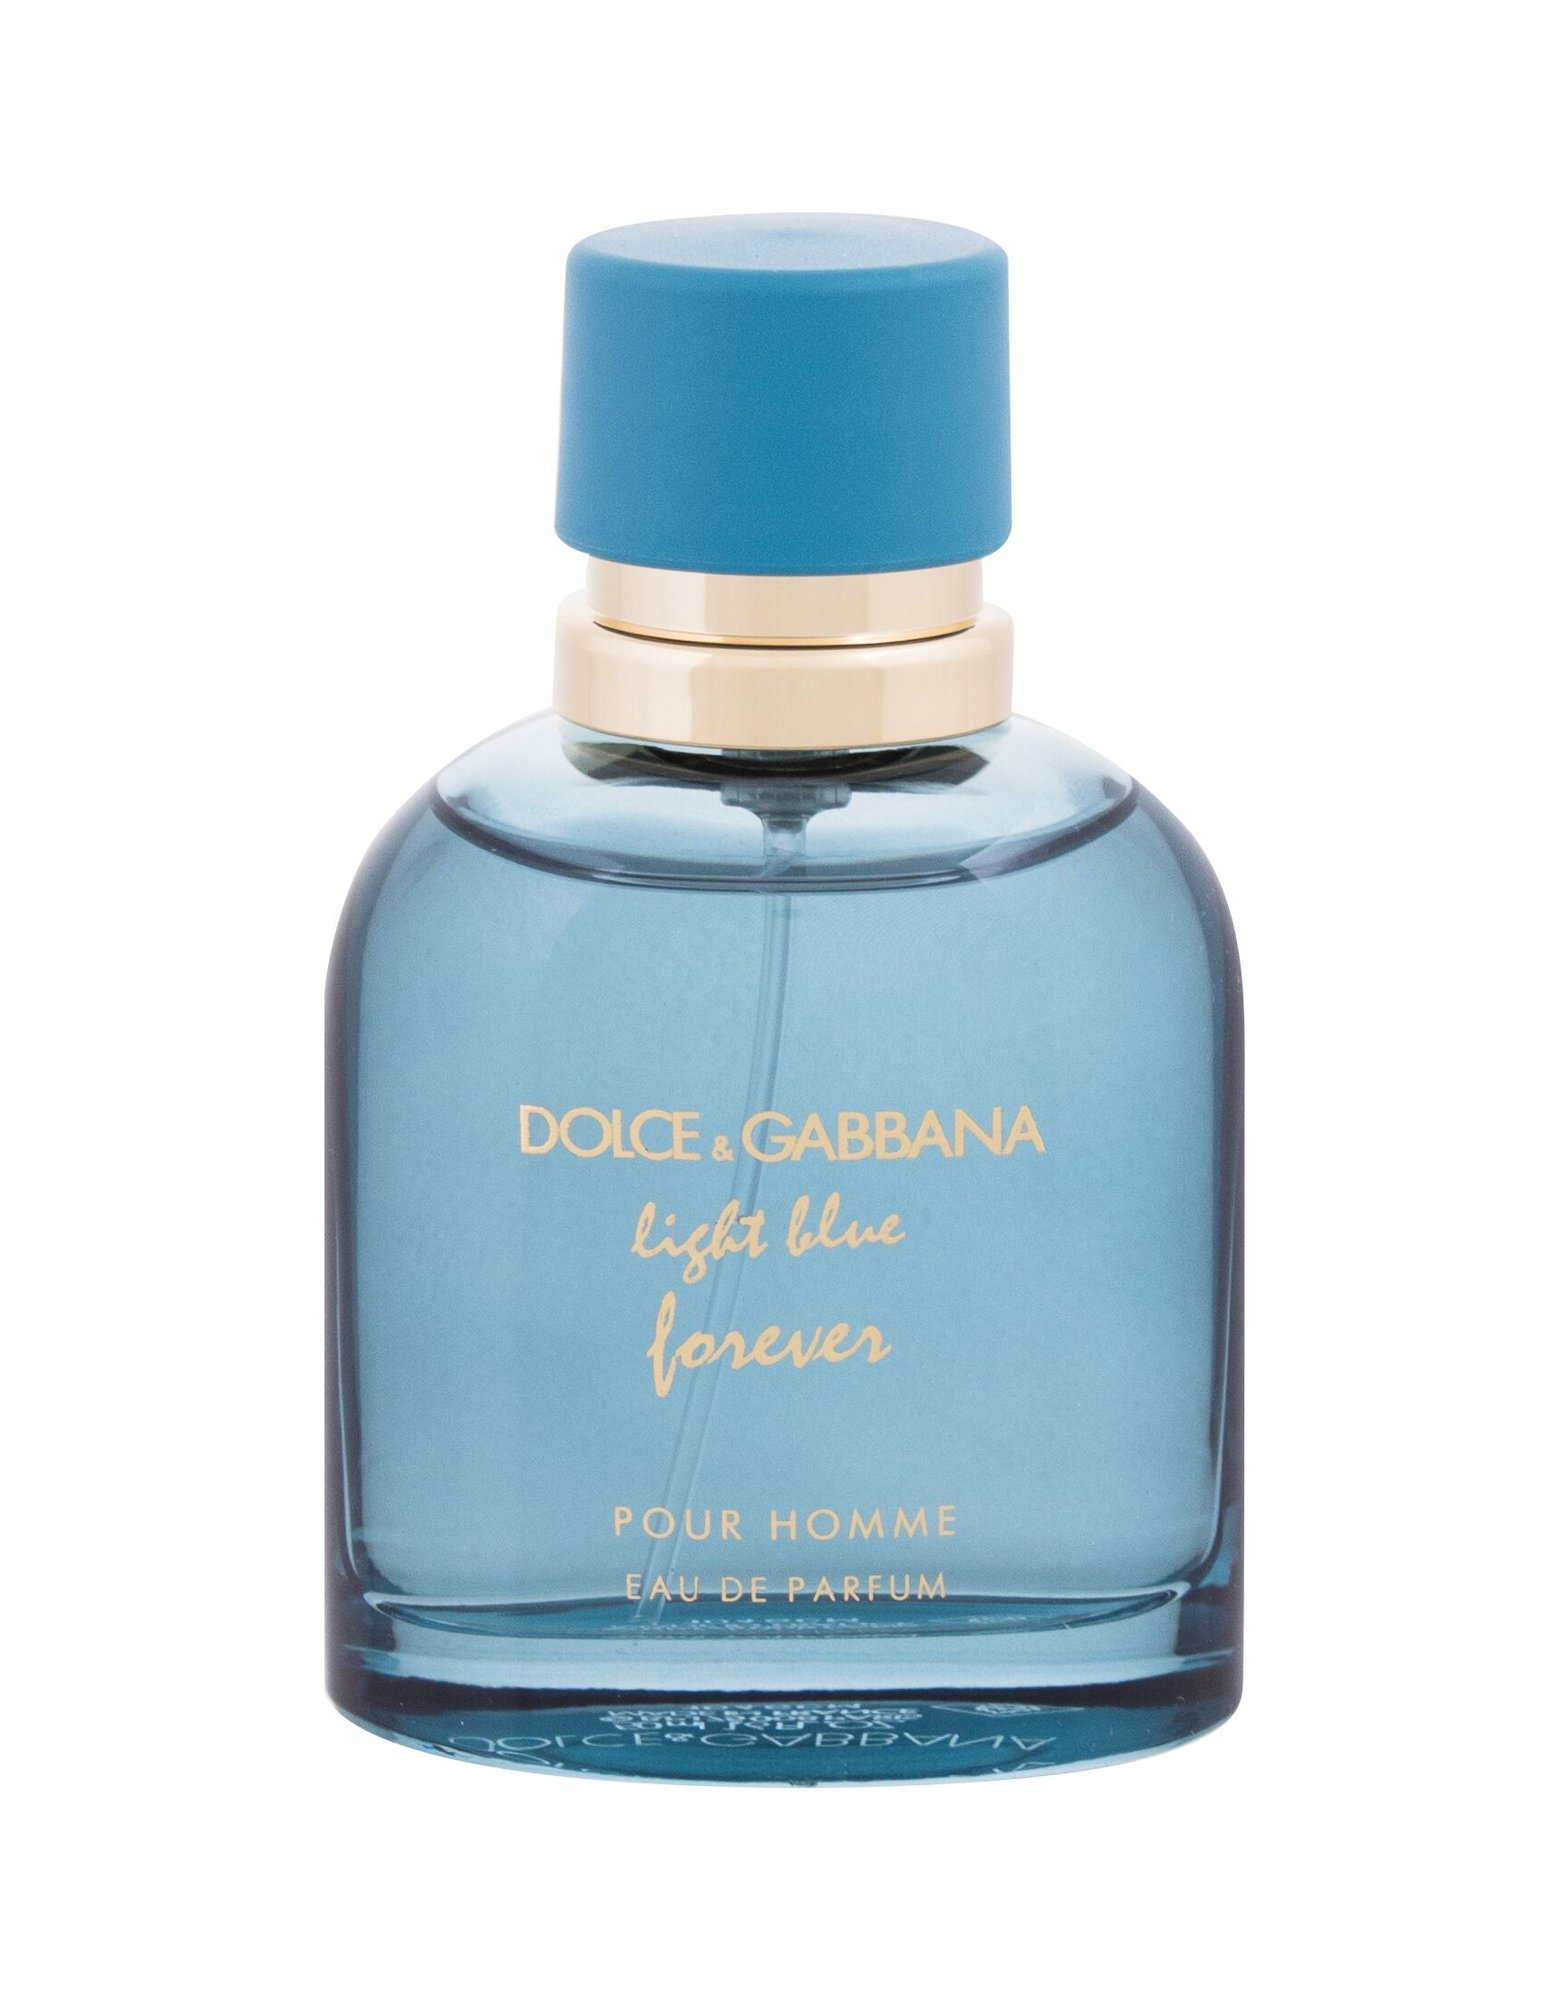 Dolce&Gabbana Light Blue Forever for men, edp 50ml